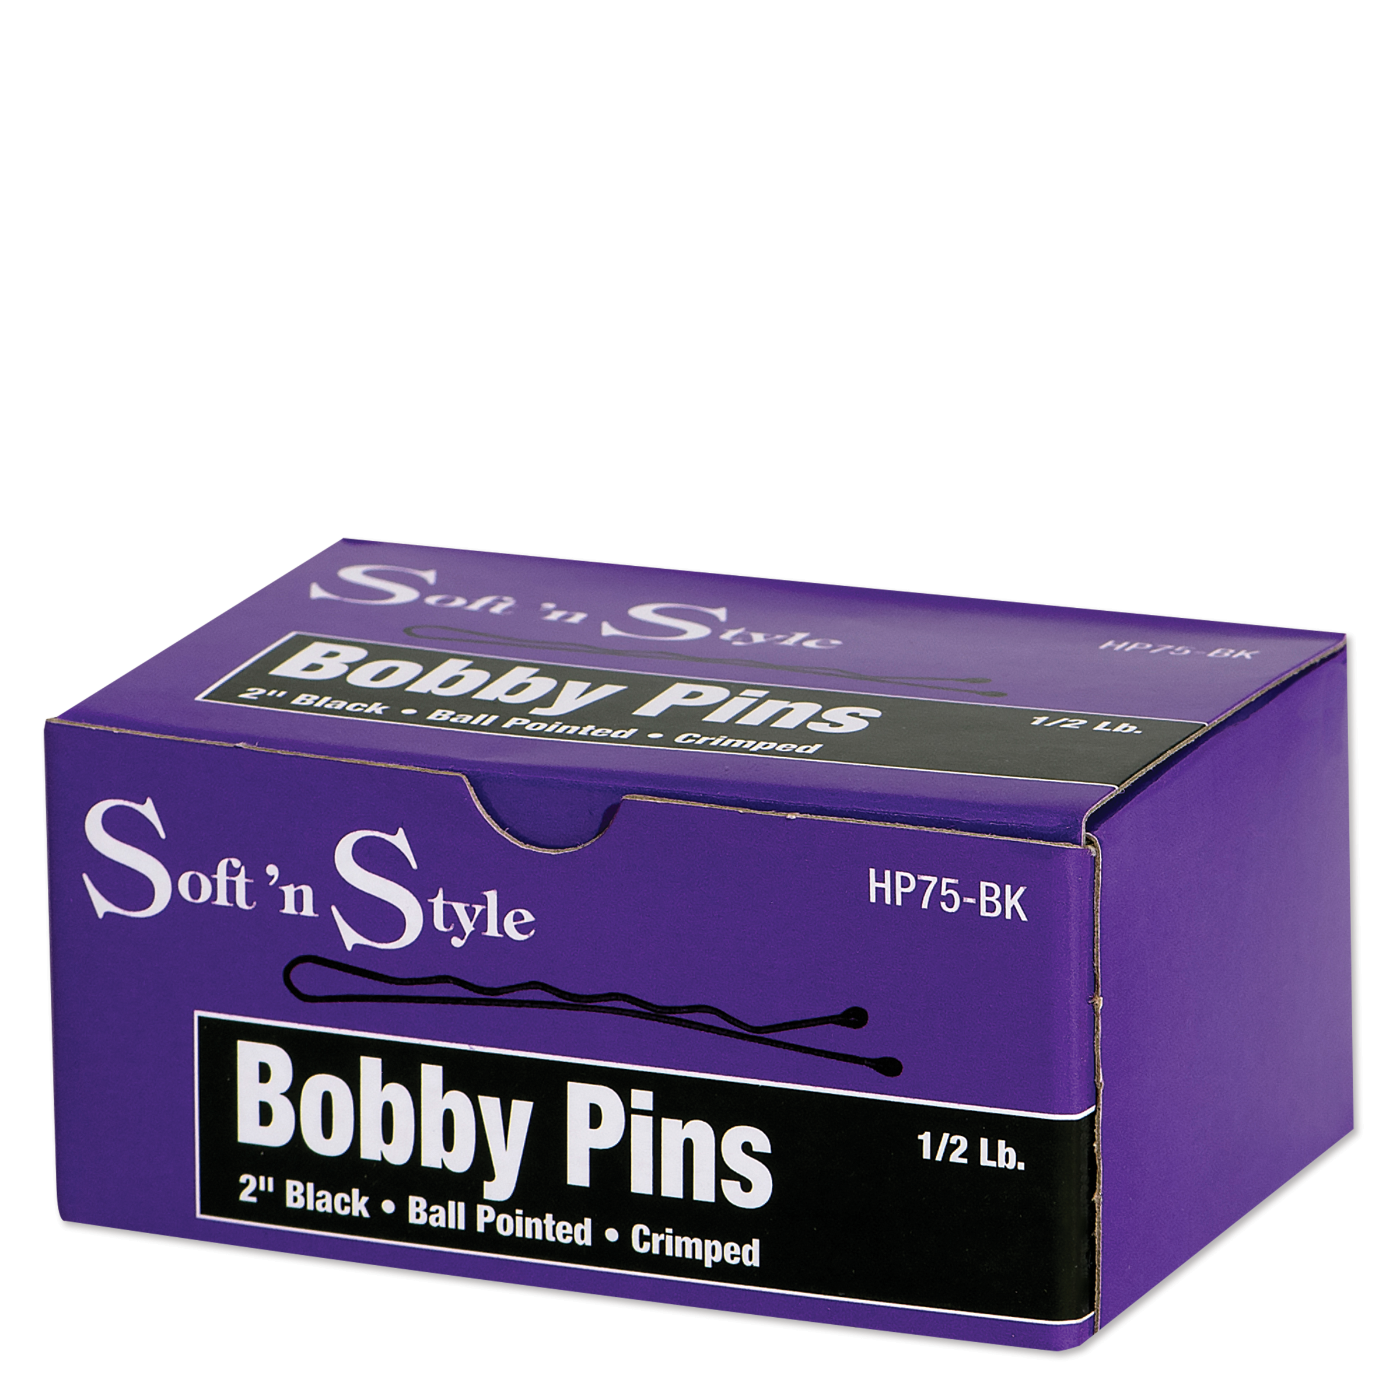 Bobby Pins, Black, 1/2 lb. box - 2"